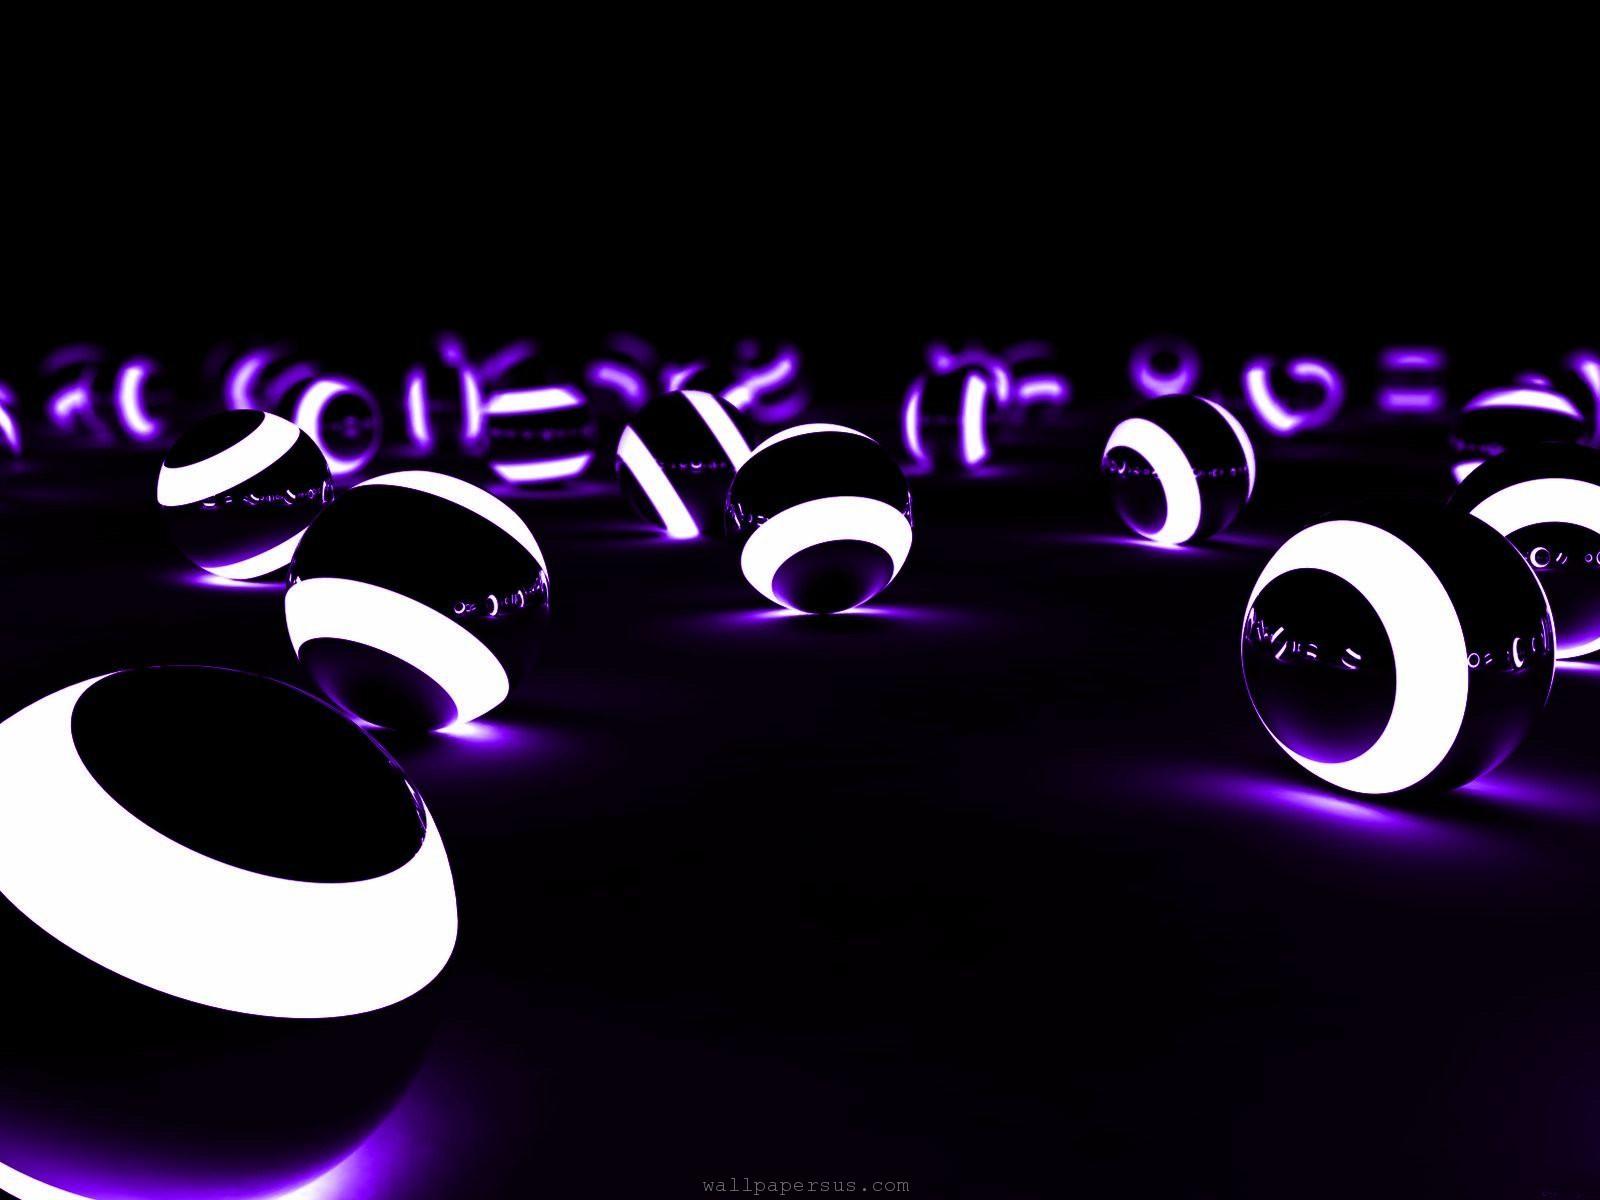 3d Abstract Light Ball Desktop Wallpaper